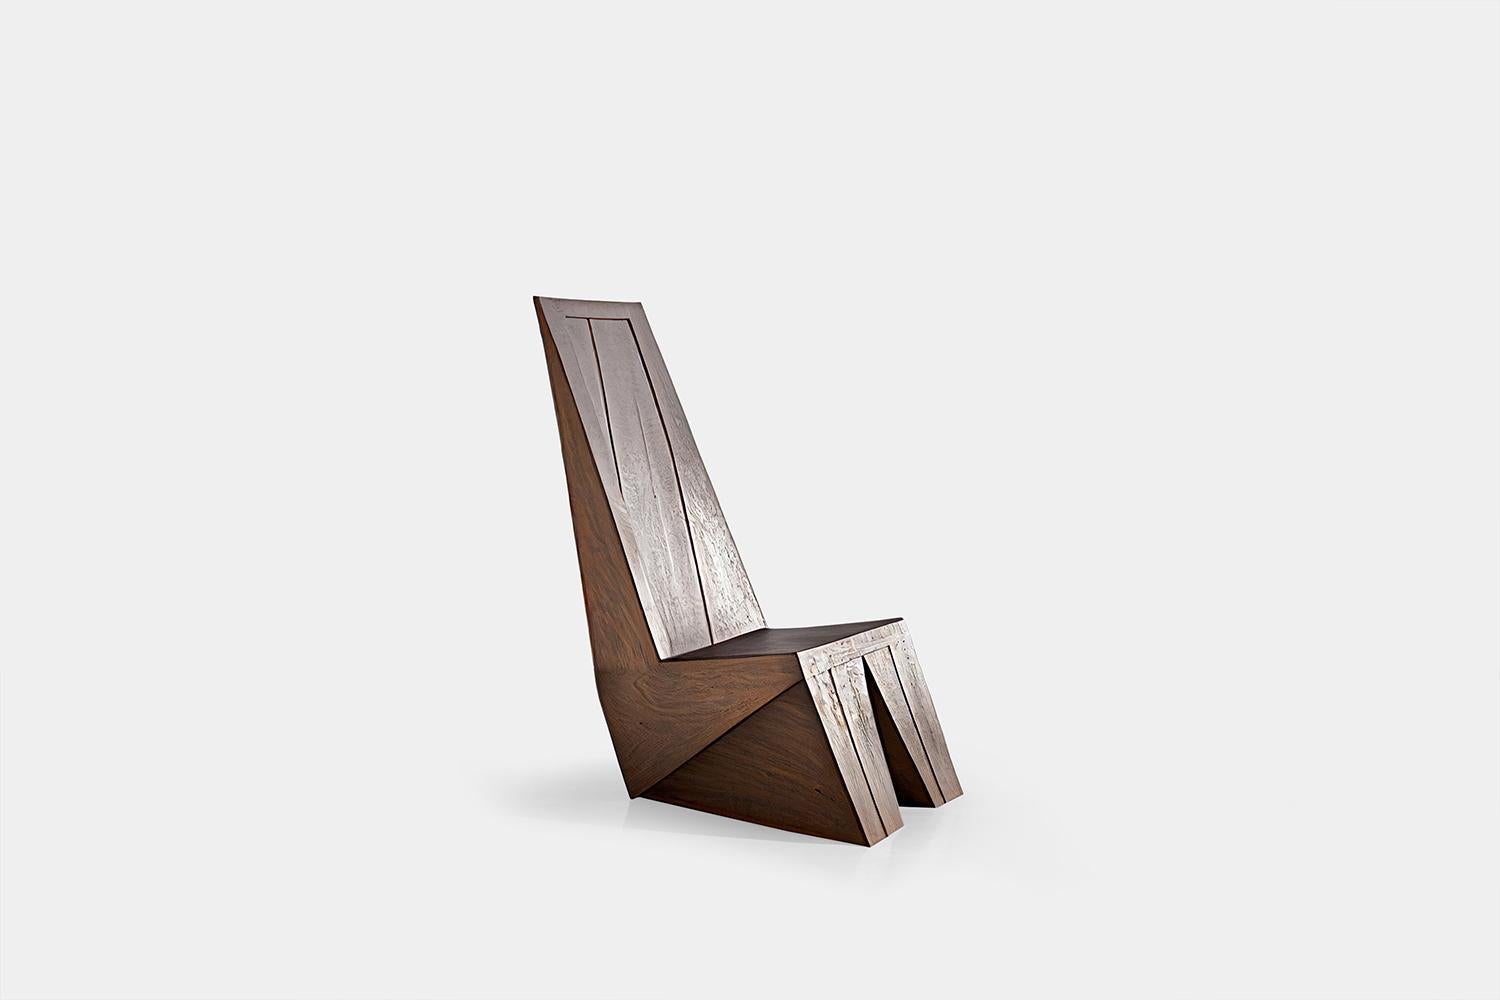 Minimalistischer, brutalistischer Lounge-Sessel, Sessel aus gebranntem Eichenholz von NONO 

Brutalistische Stühle haben eine starke, aber passive Präsenz mit minimalistischen Designs, die die reichen Texturen des natürlichen Eichenholzes